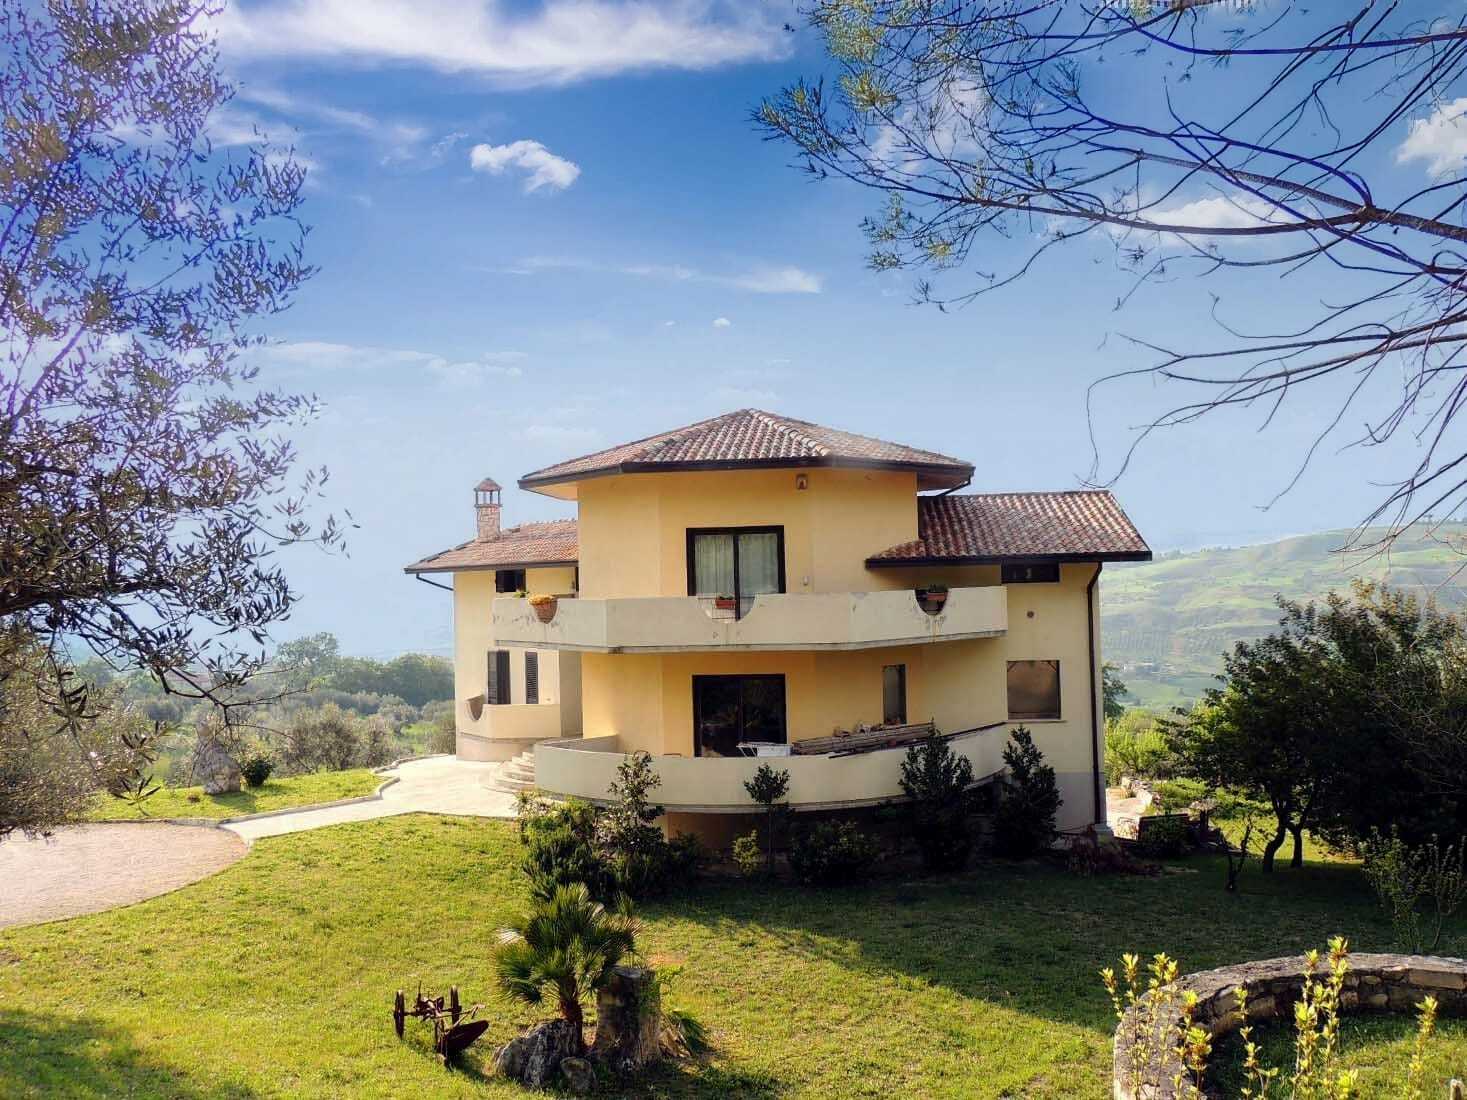 For sale villa in quiet zone San Valentino in Abruzzo Citeriore Abruzzo